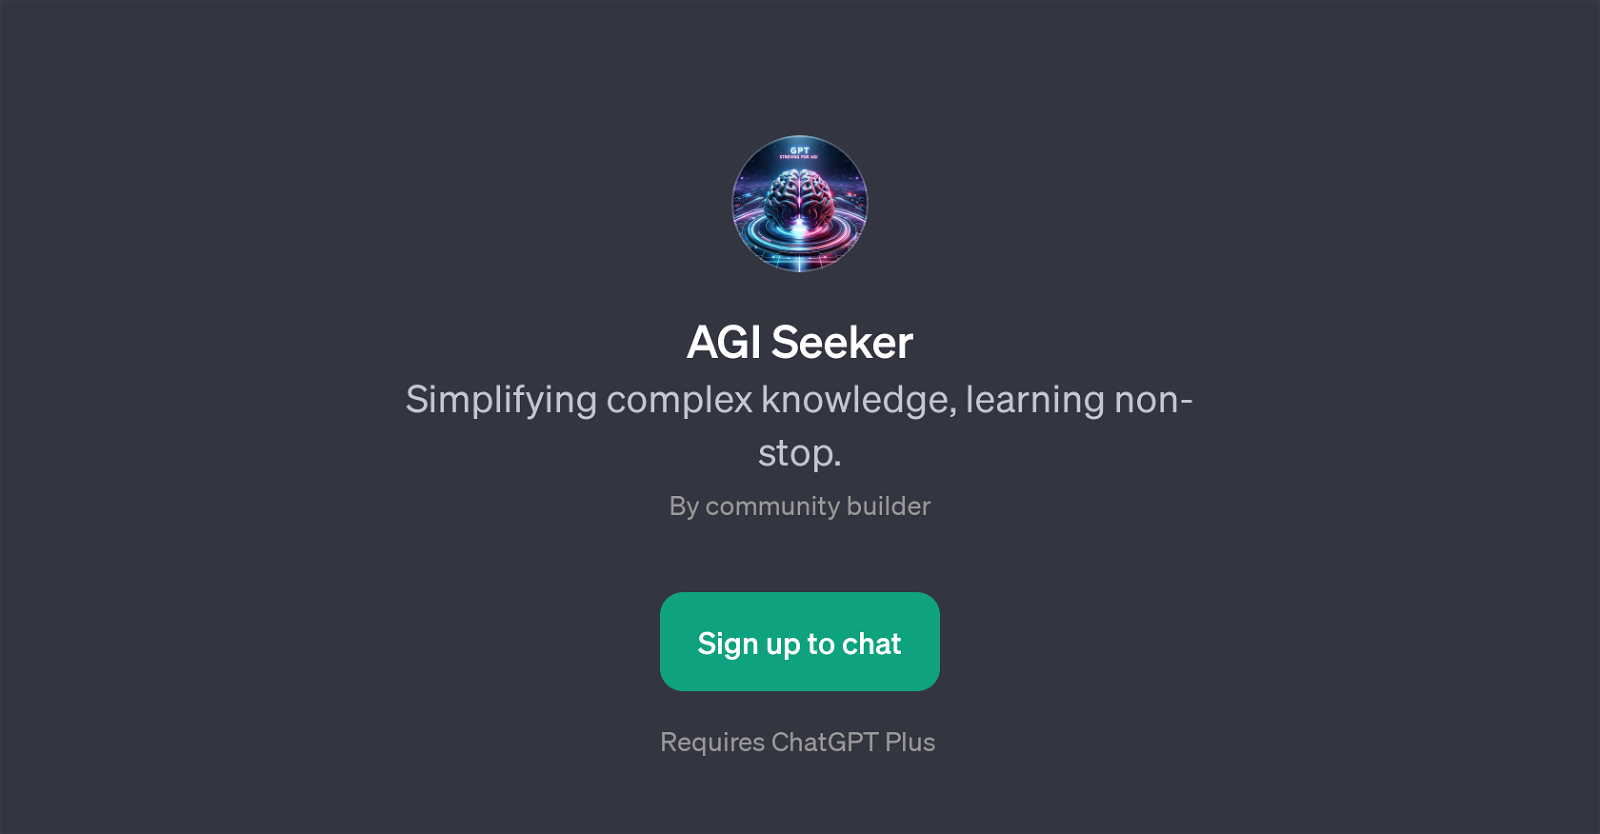 AGI Seeker website